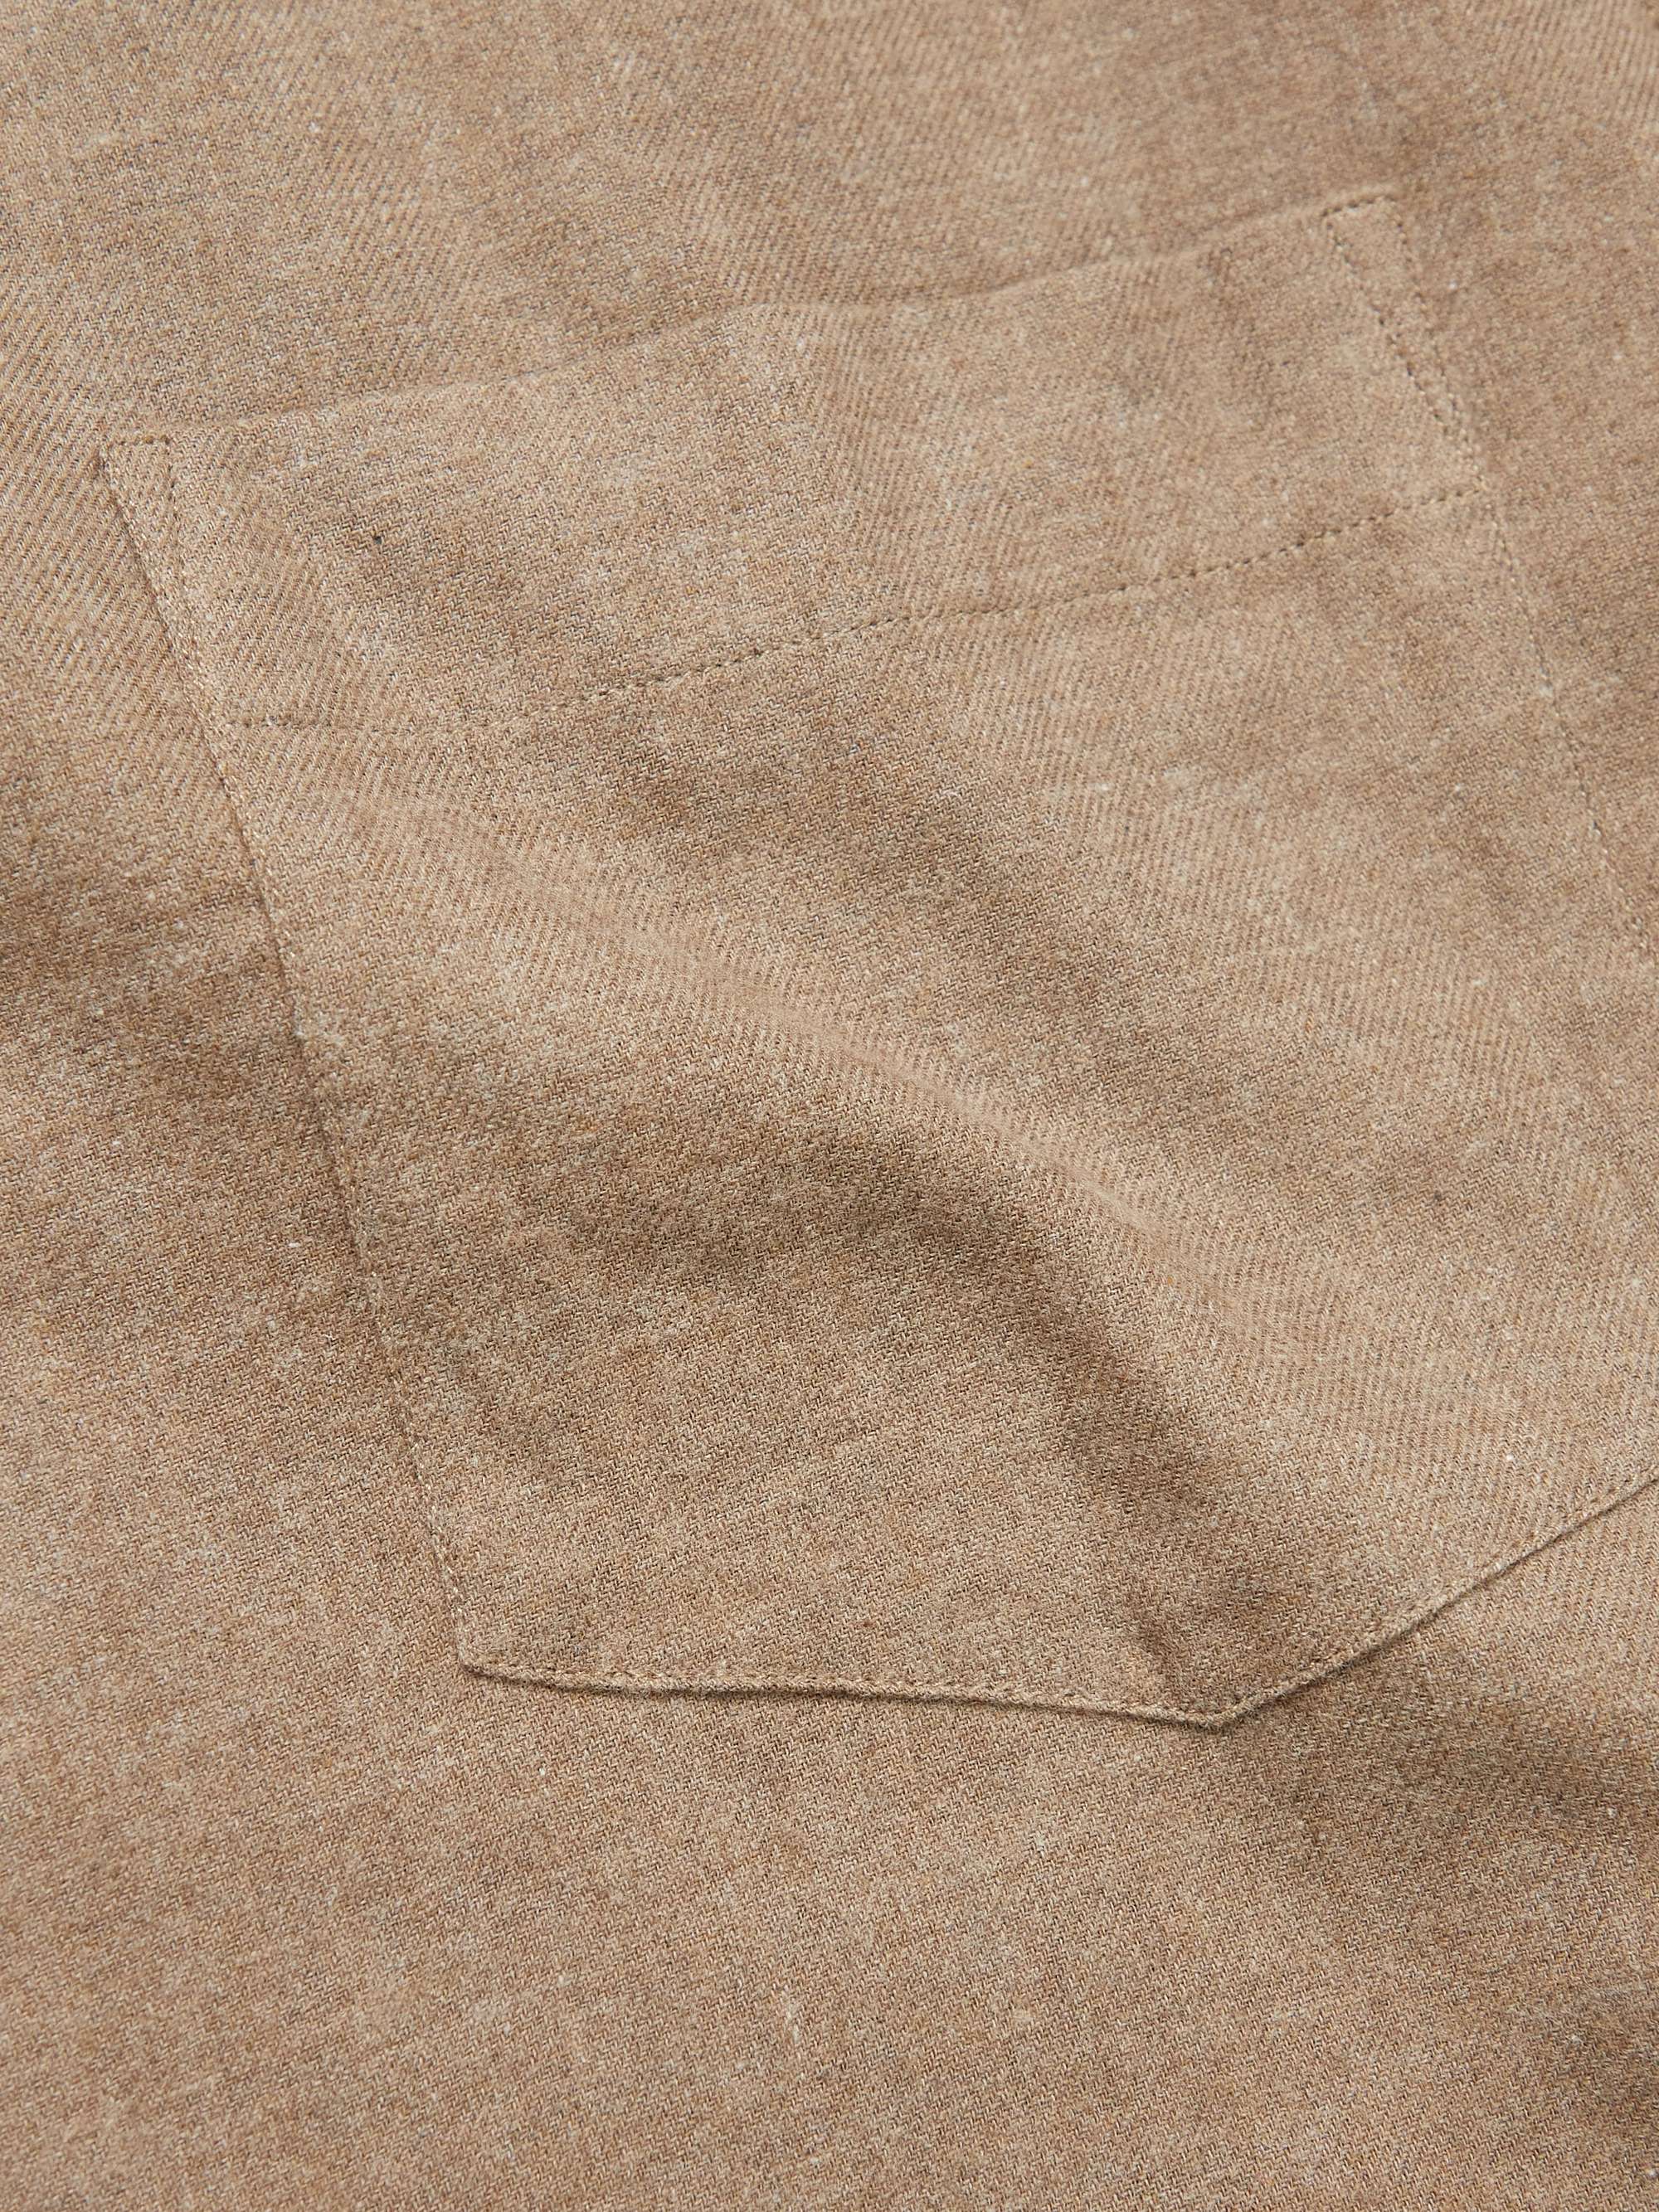 DE BONNE FACTURE Button-Down Collar Cotton-Flannel Shirt